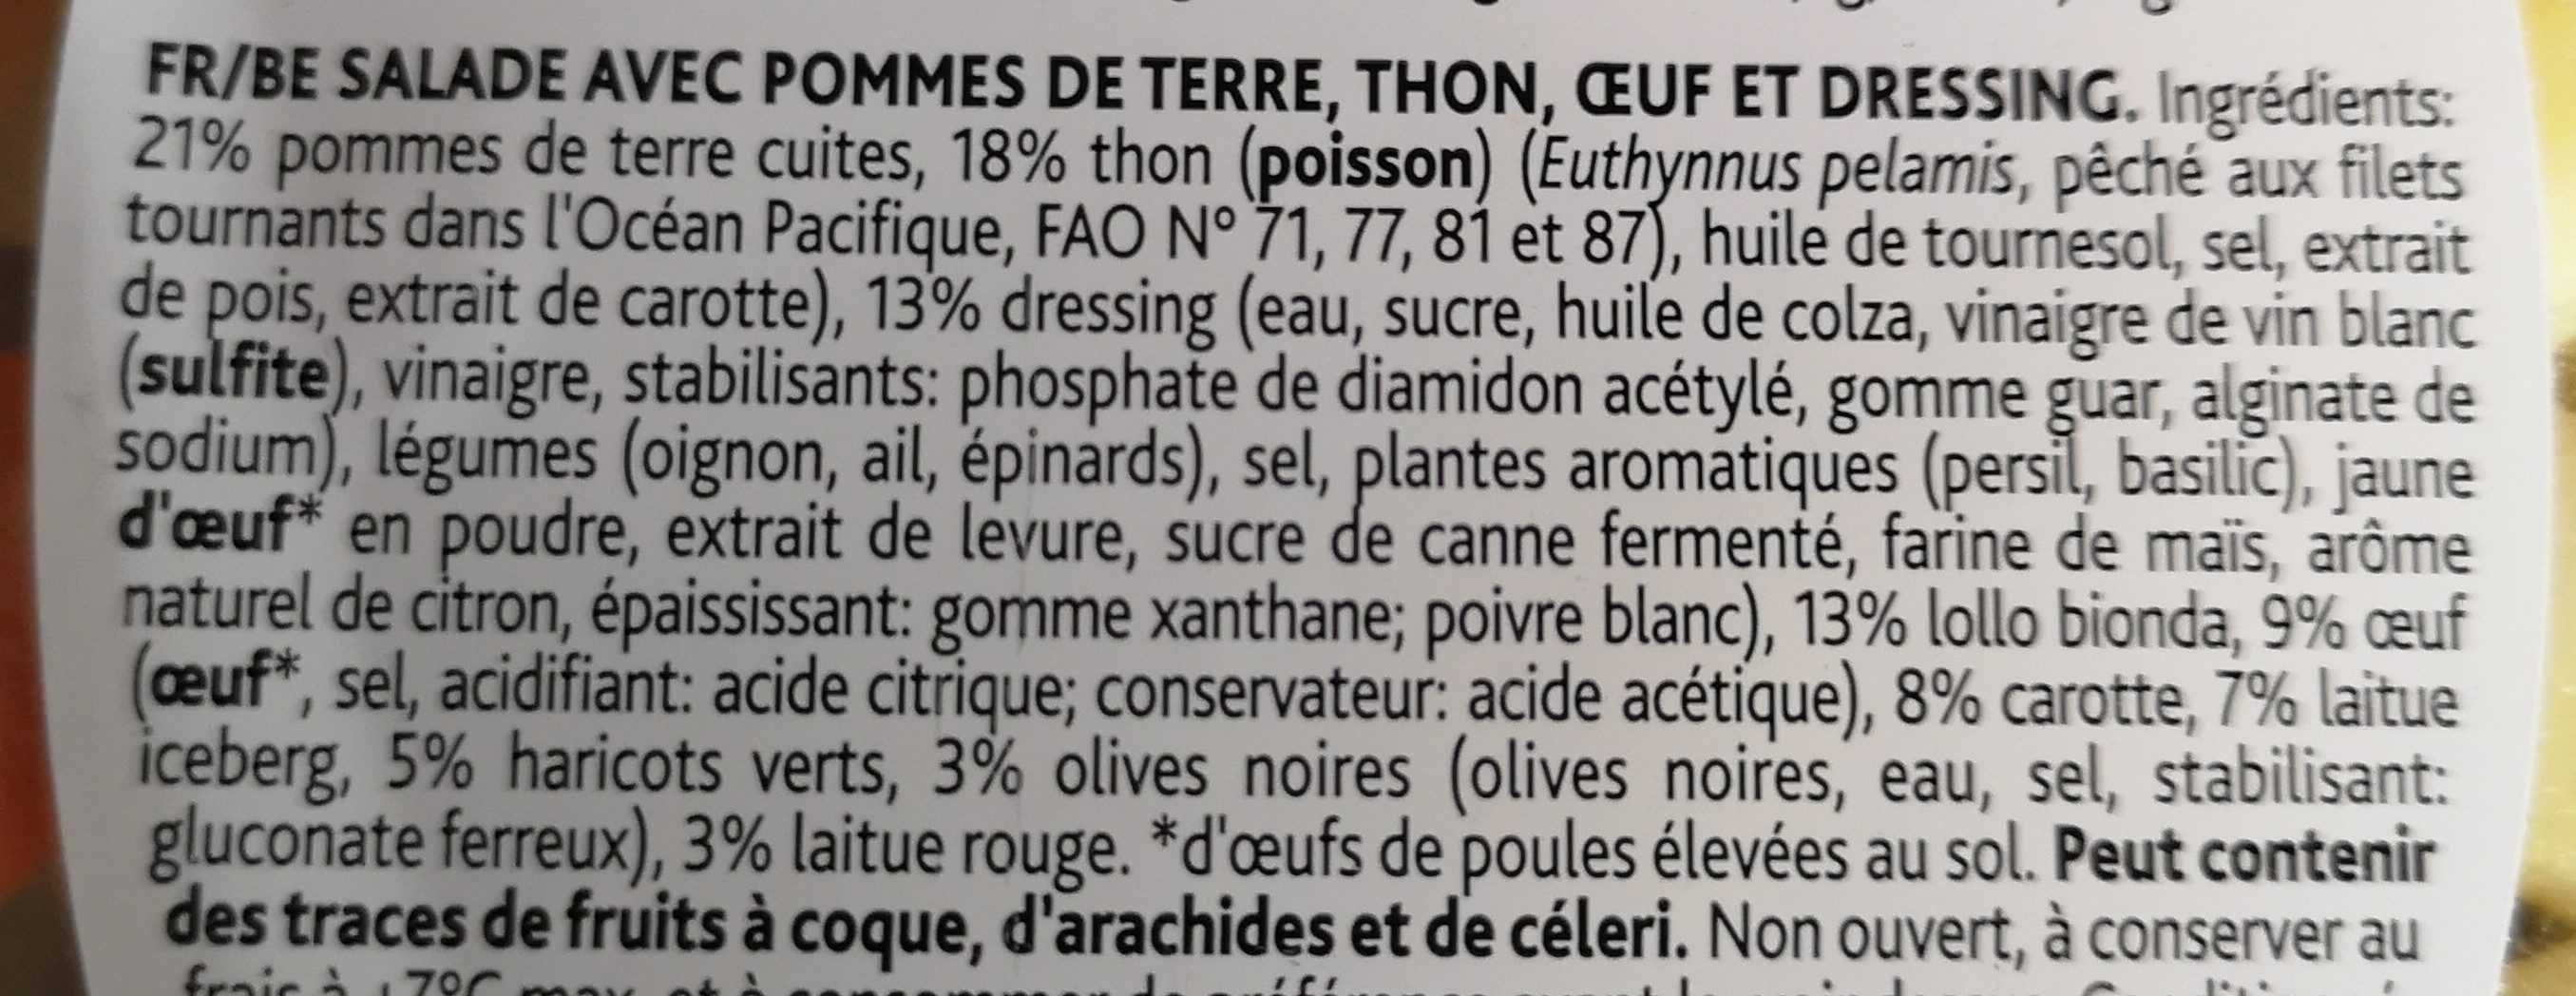 Salade repas thon - Ingredienser - fr